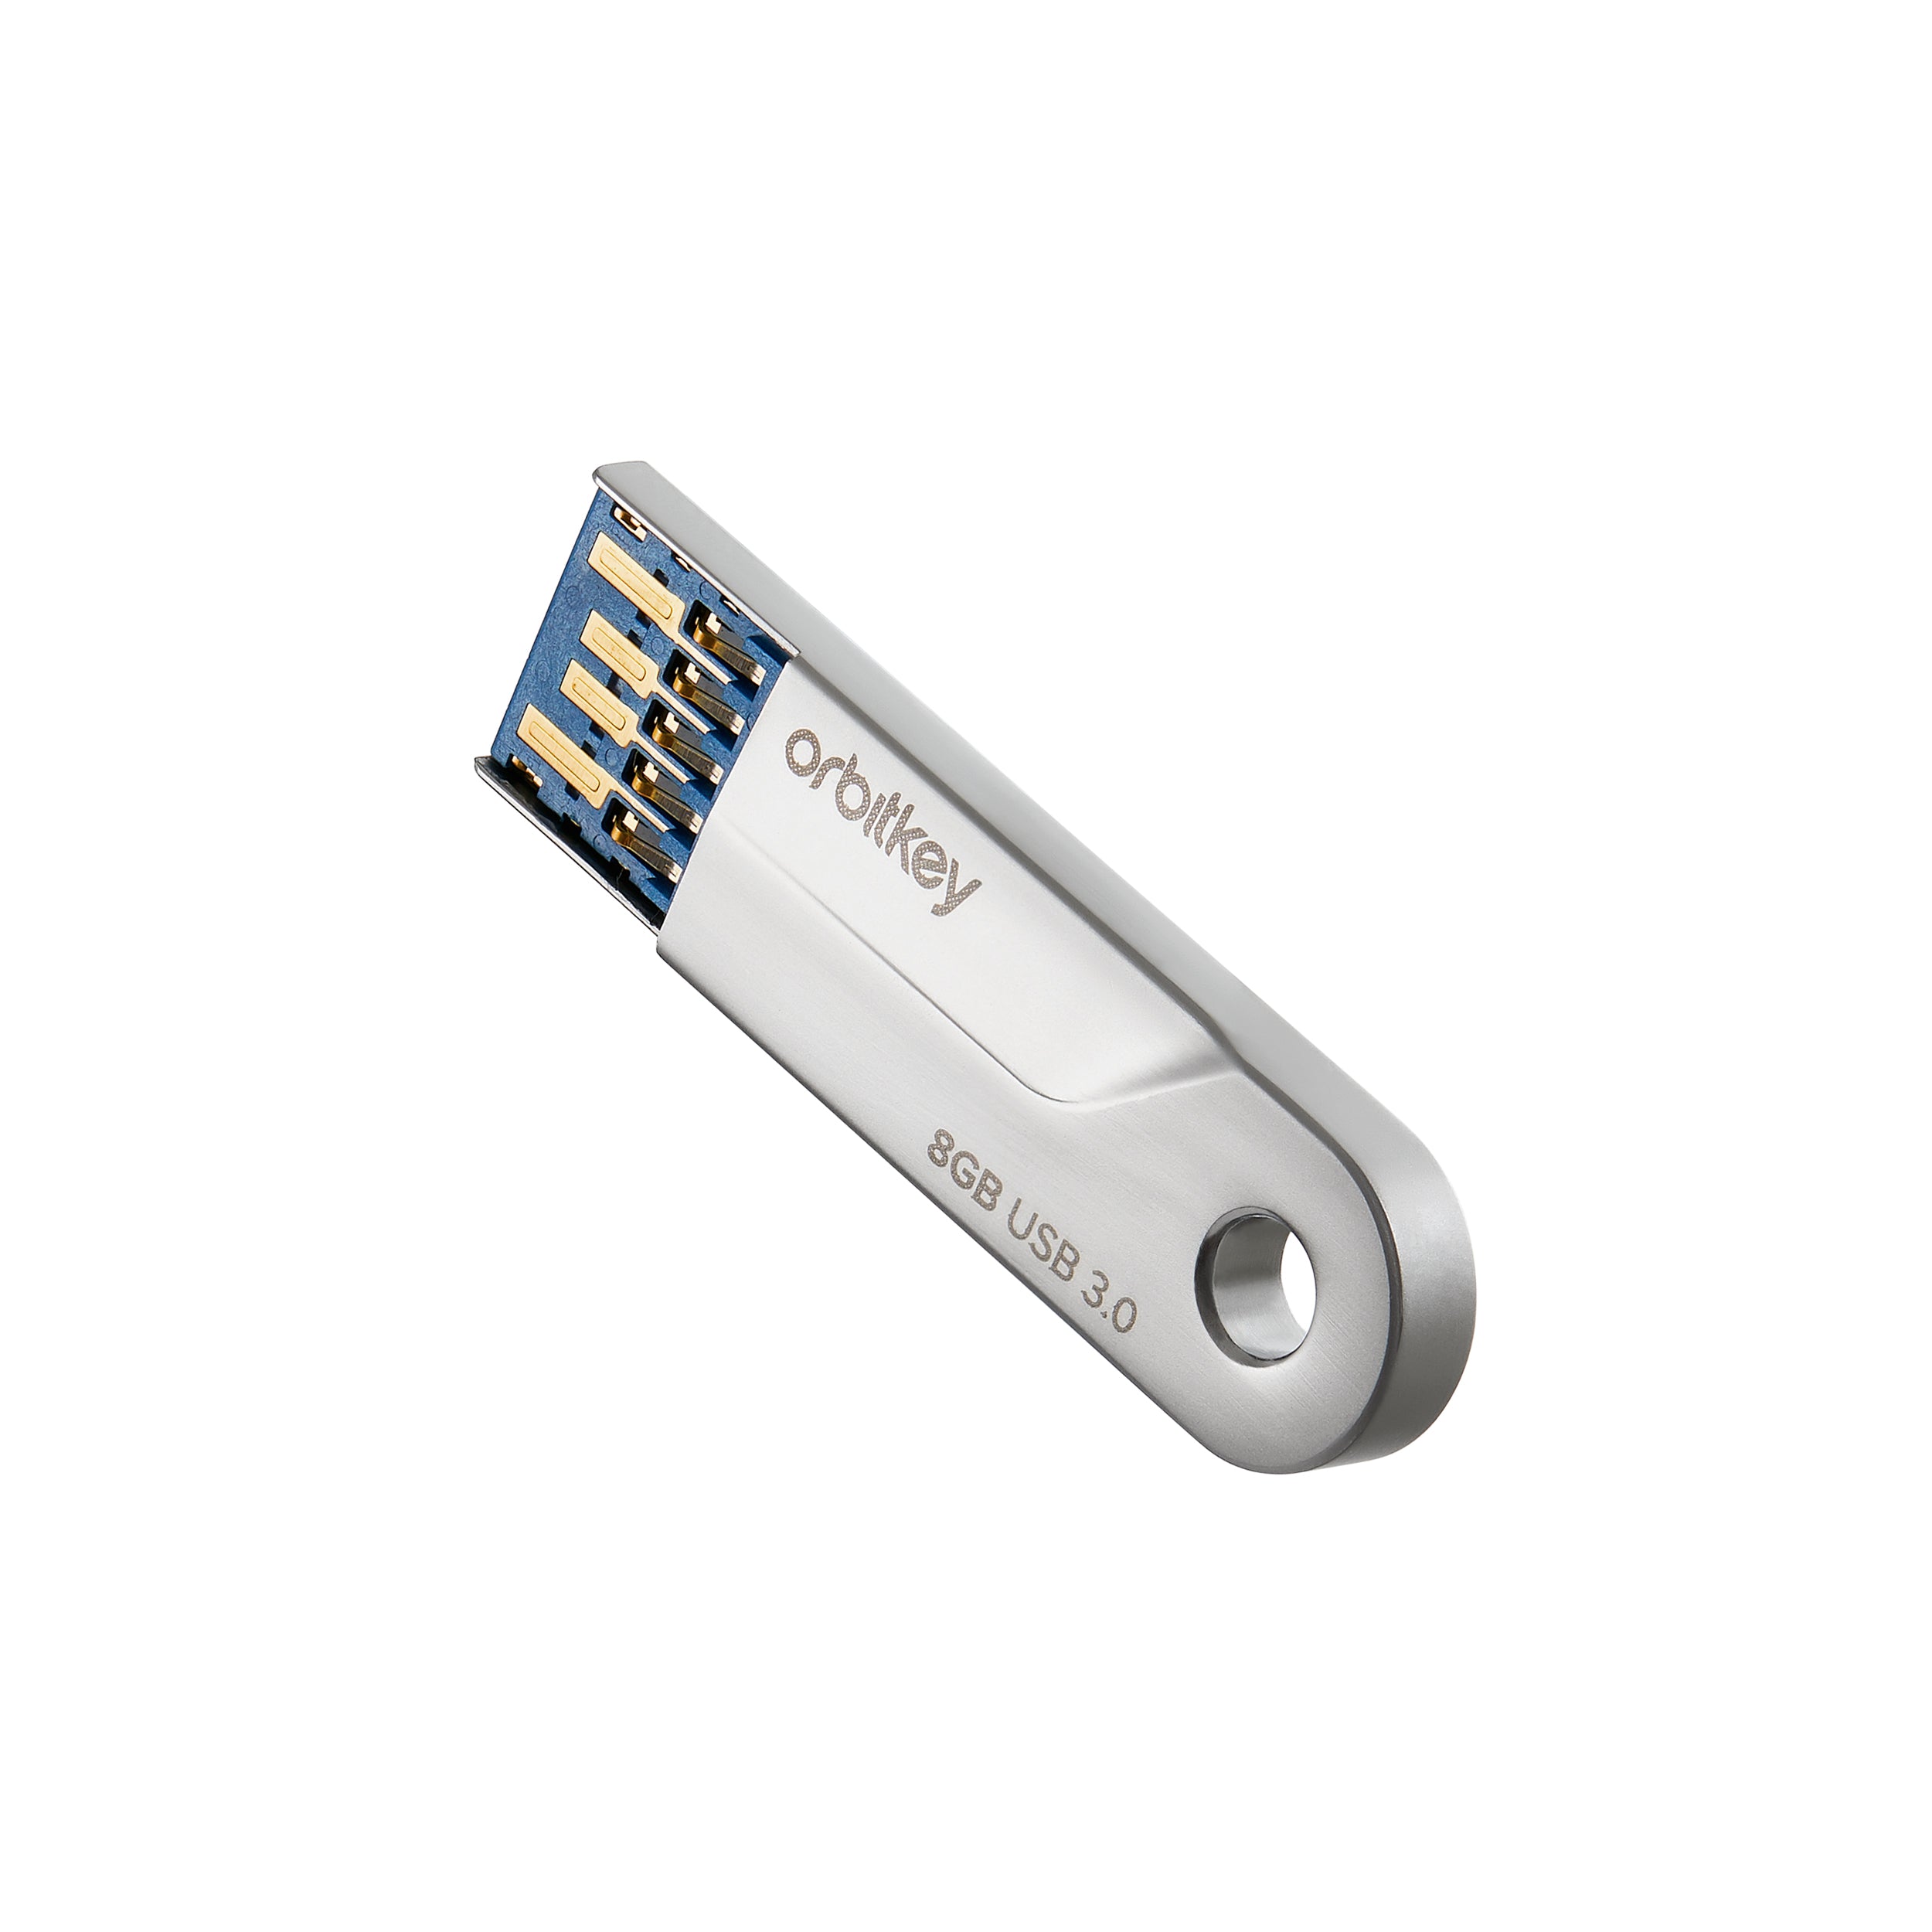 USB Stick 8 GB voor Orbitkey sleutelhanger